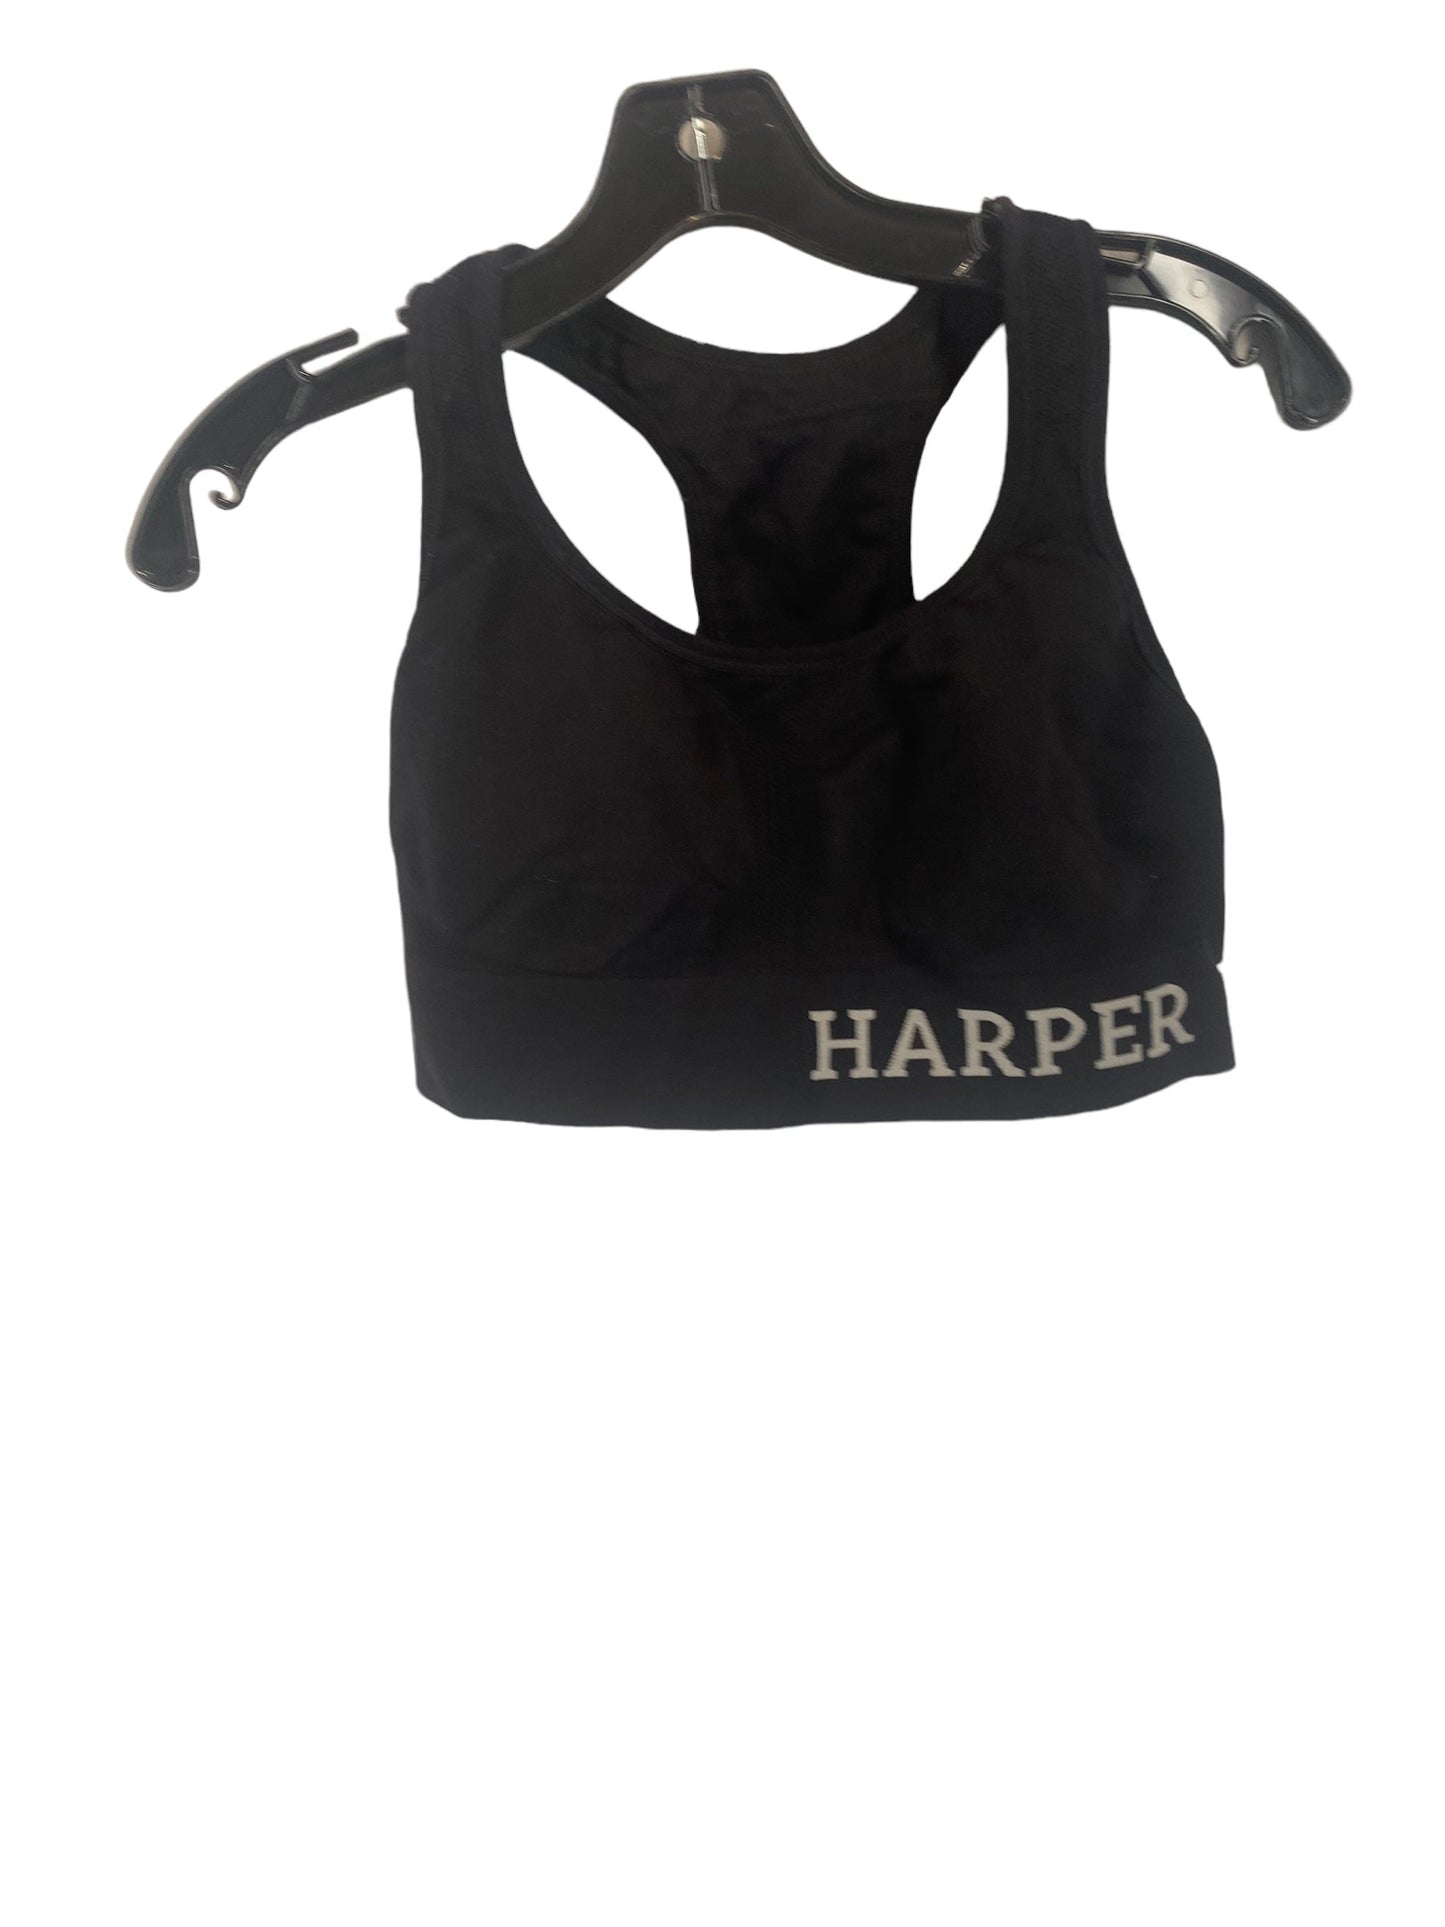 Black Athletic Bra Harper, Size S